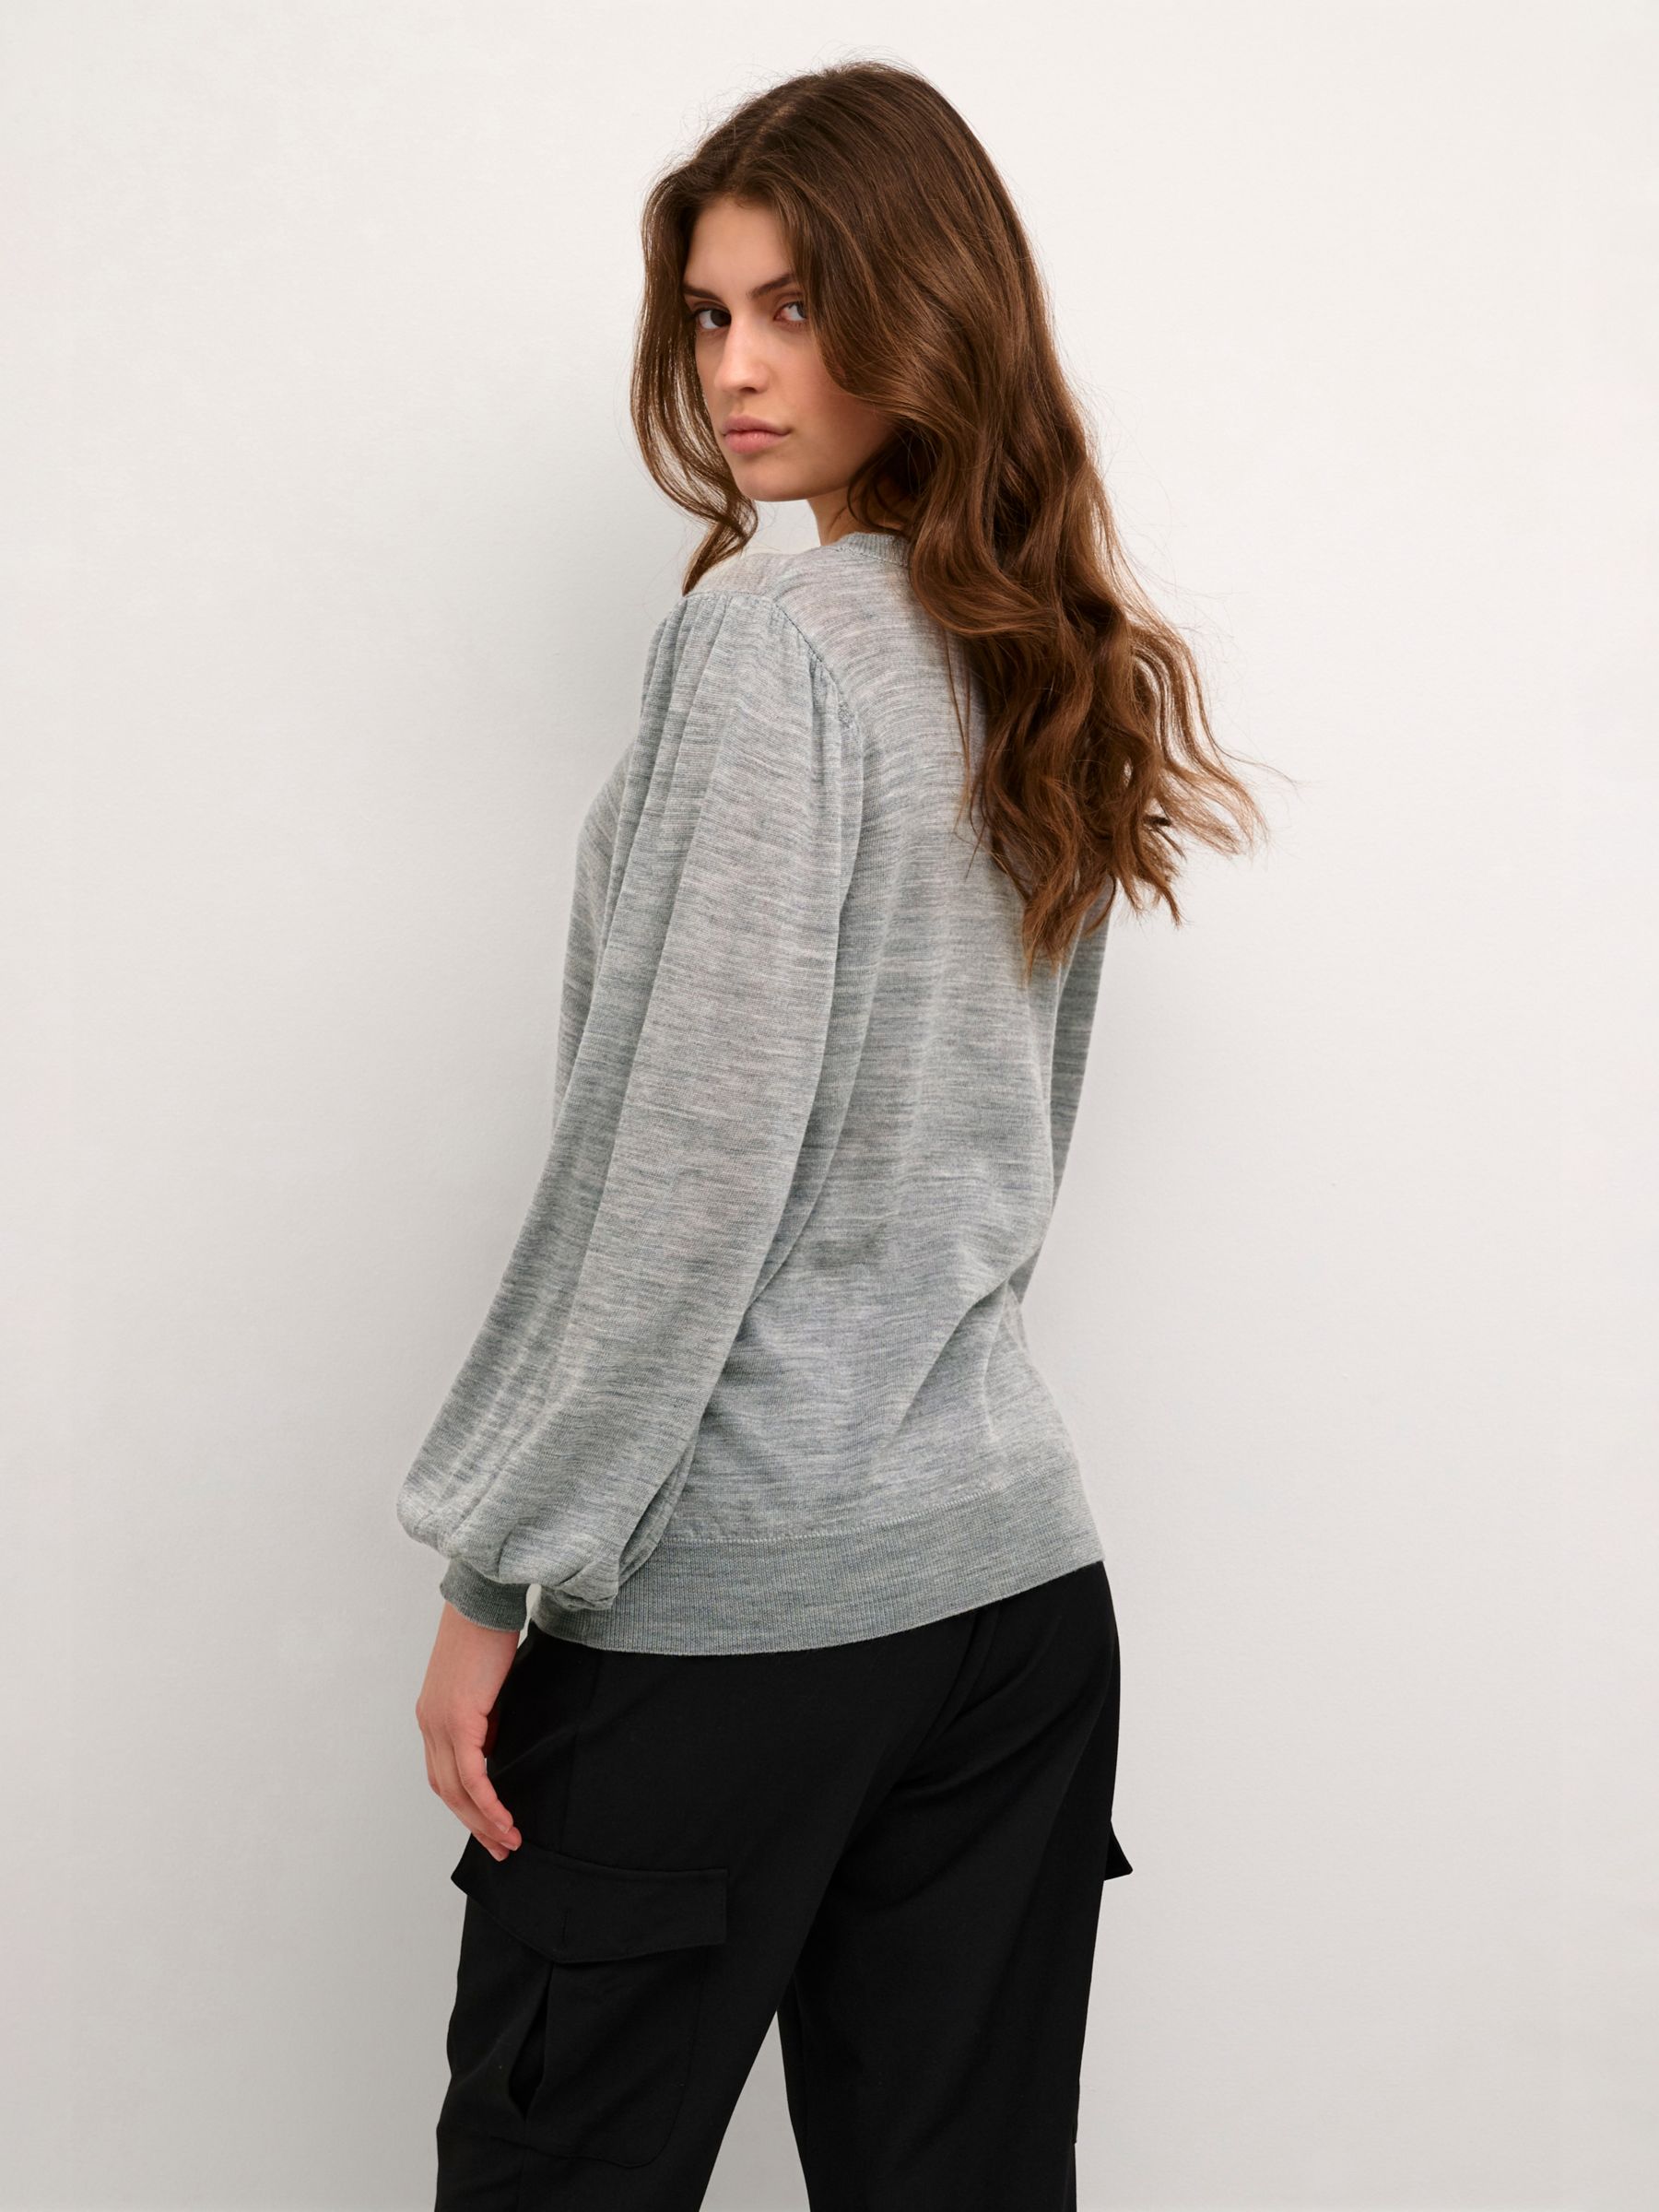 Buy Skechers womens capri legging dark grey melange Online